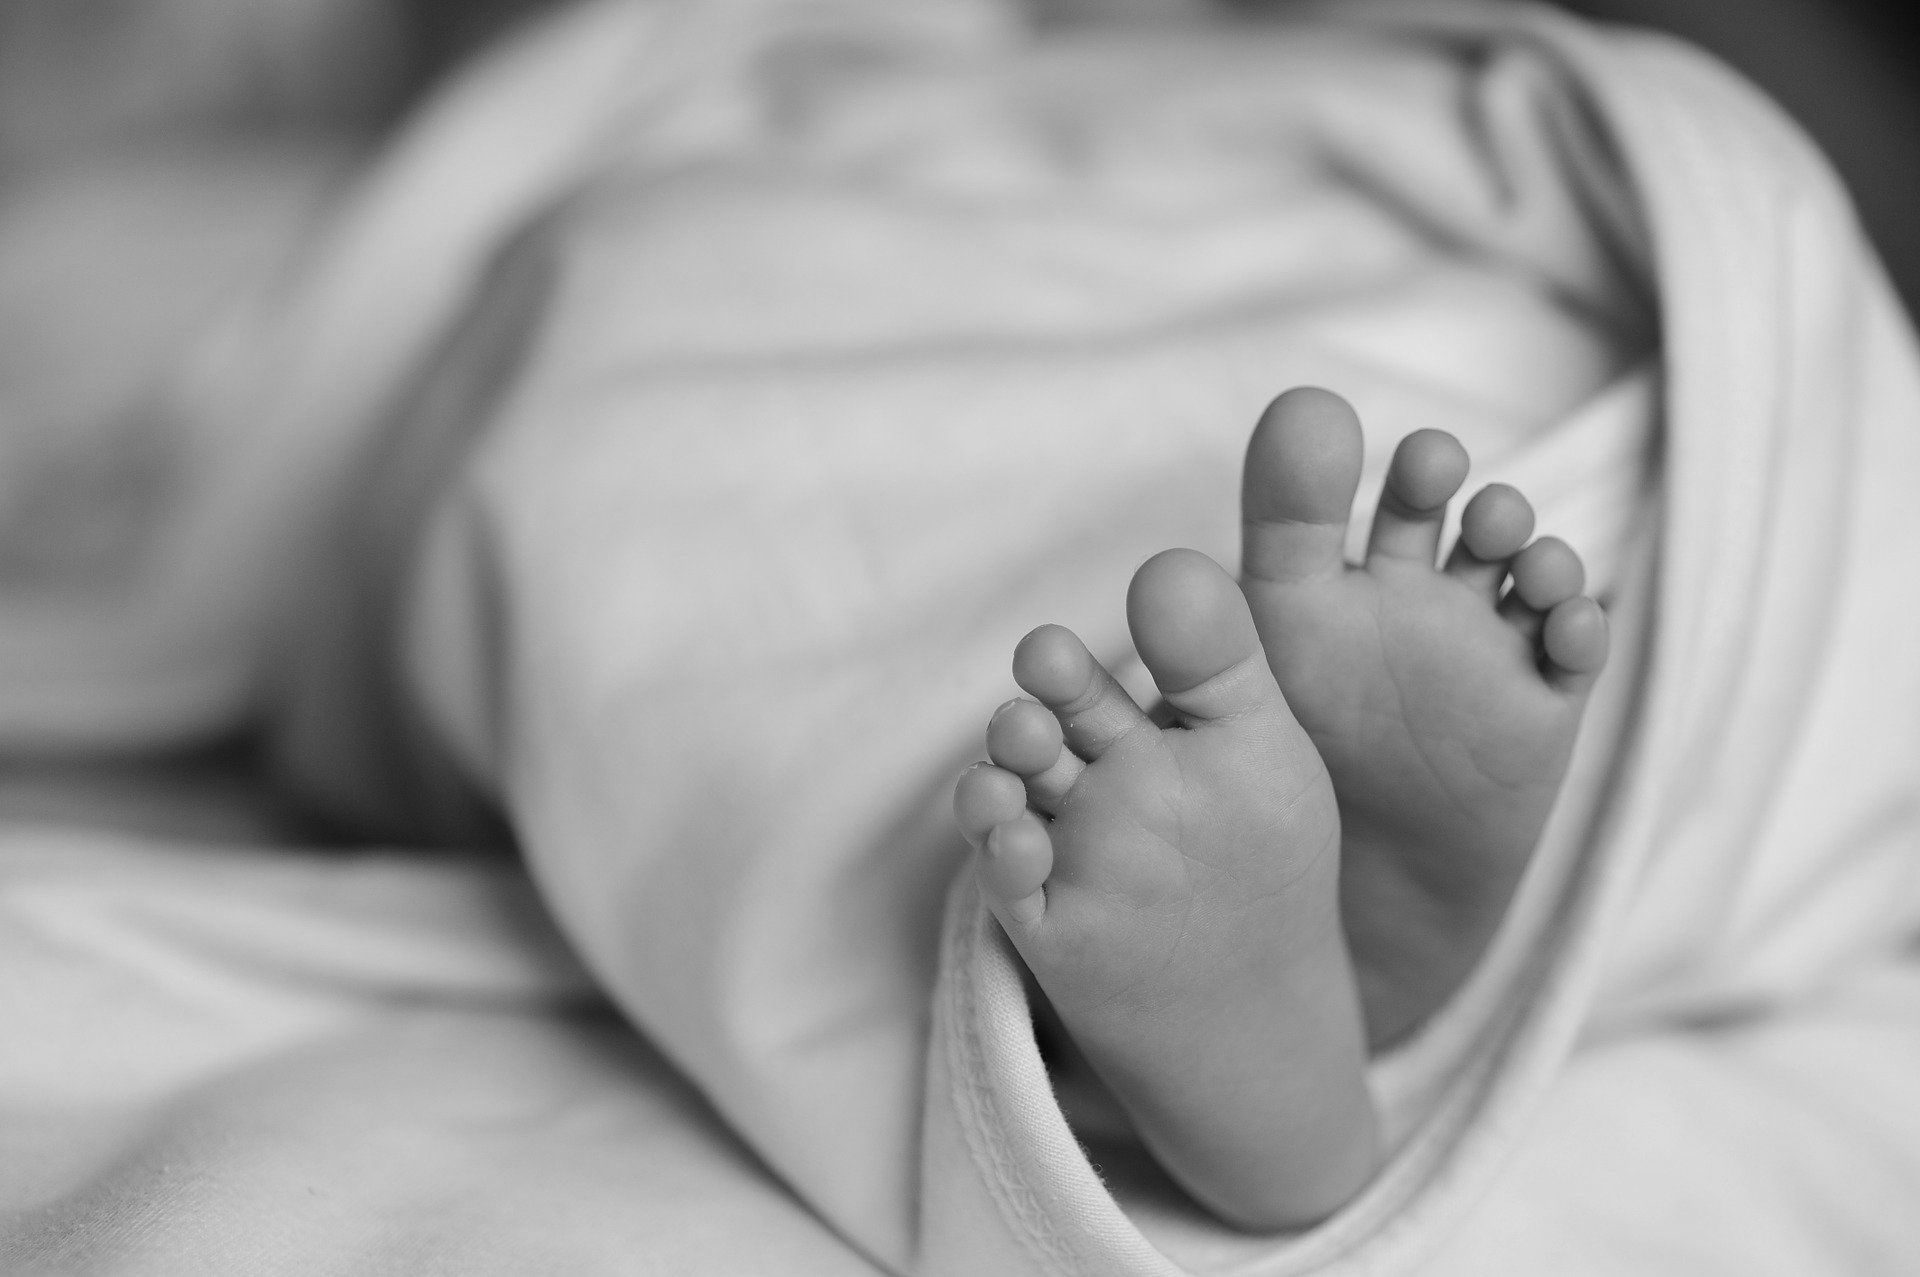 Факт смерти новорожденной прокомментировали павлодарские врачи